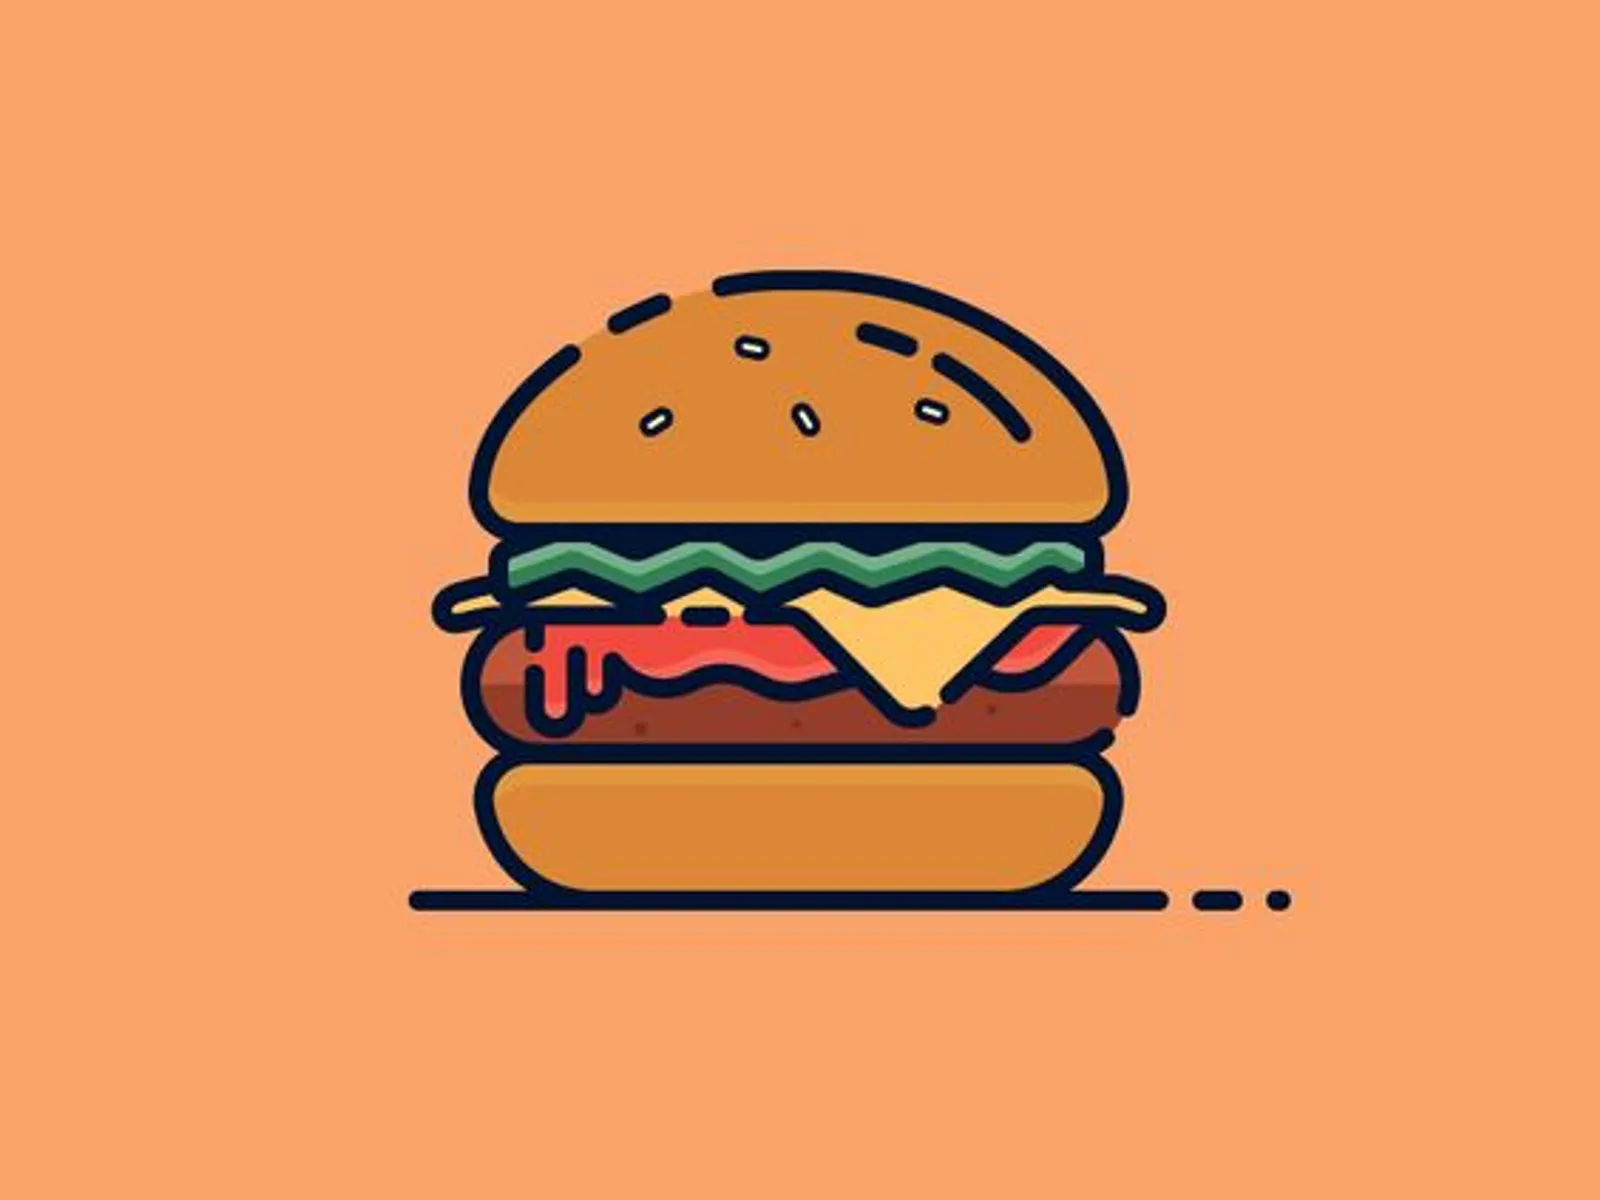 Gara-Gara Komplain Soal Burger, Pria Ini Raup Jutaan Rupiah Per Tahun